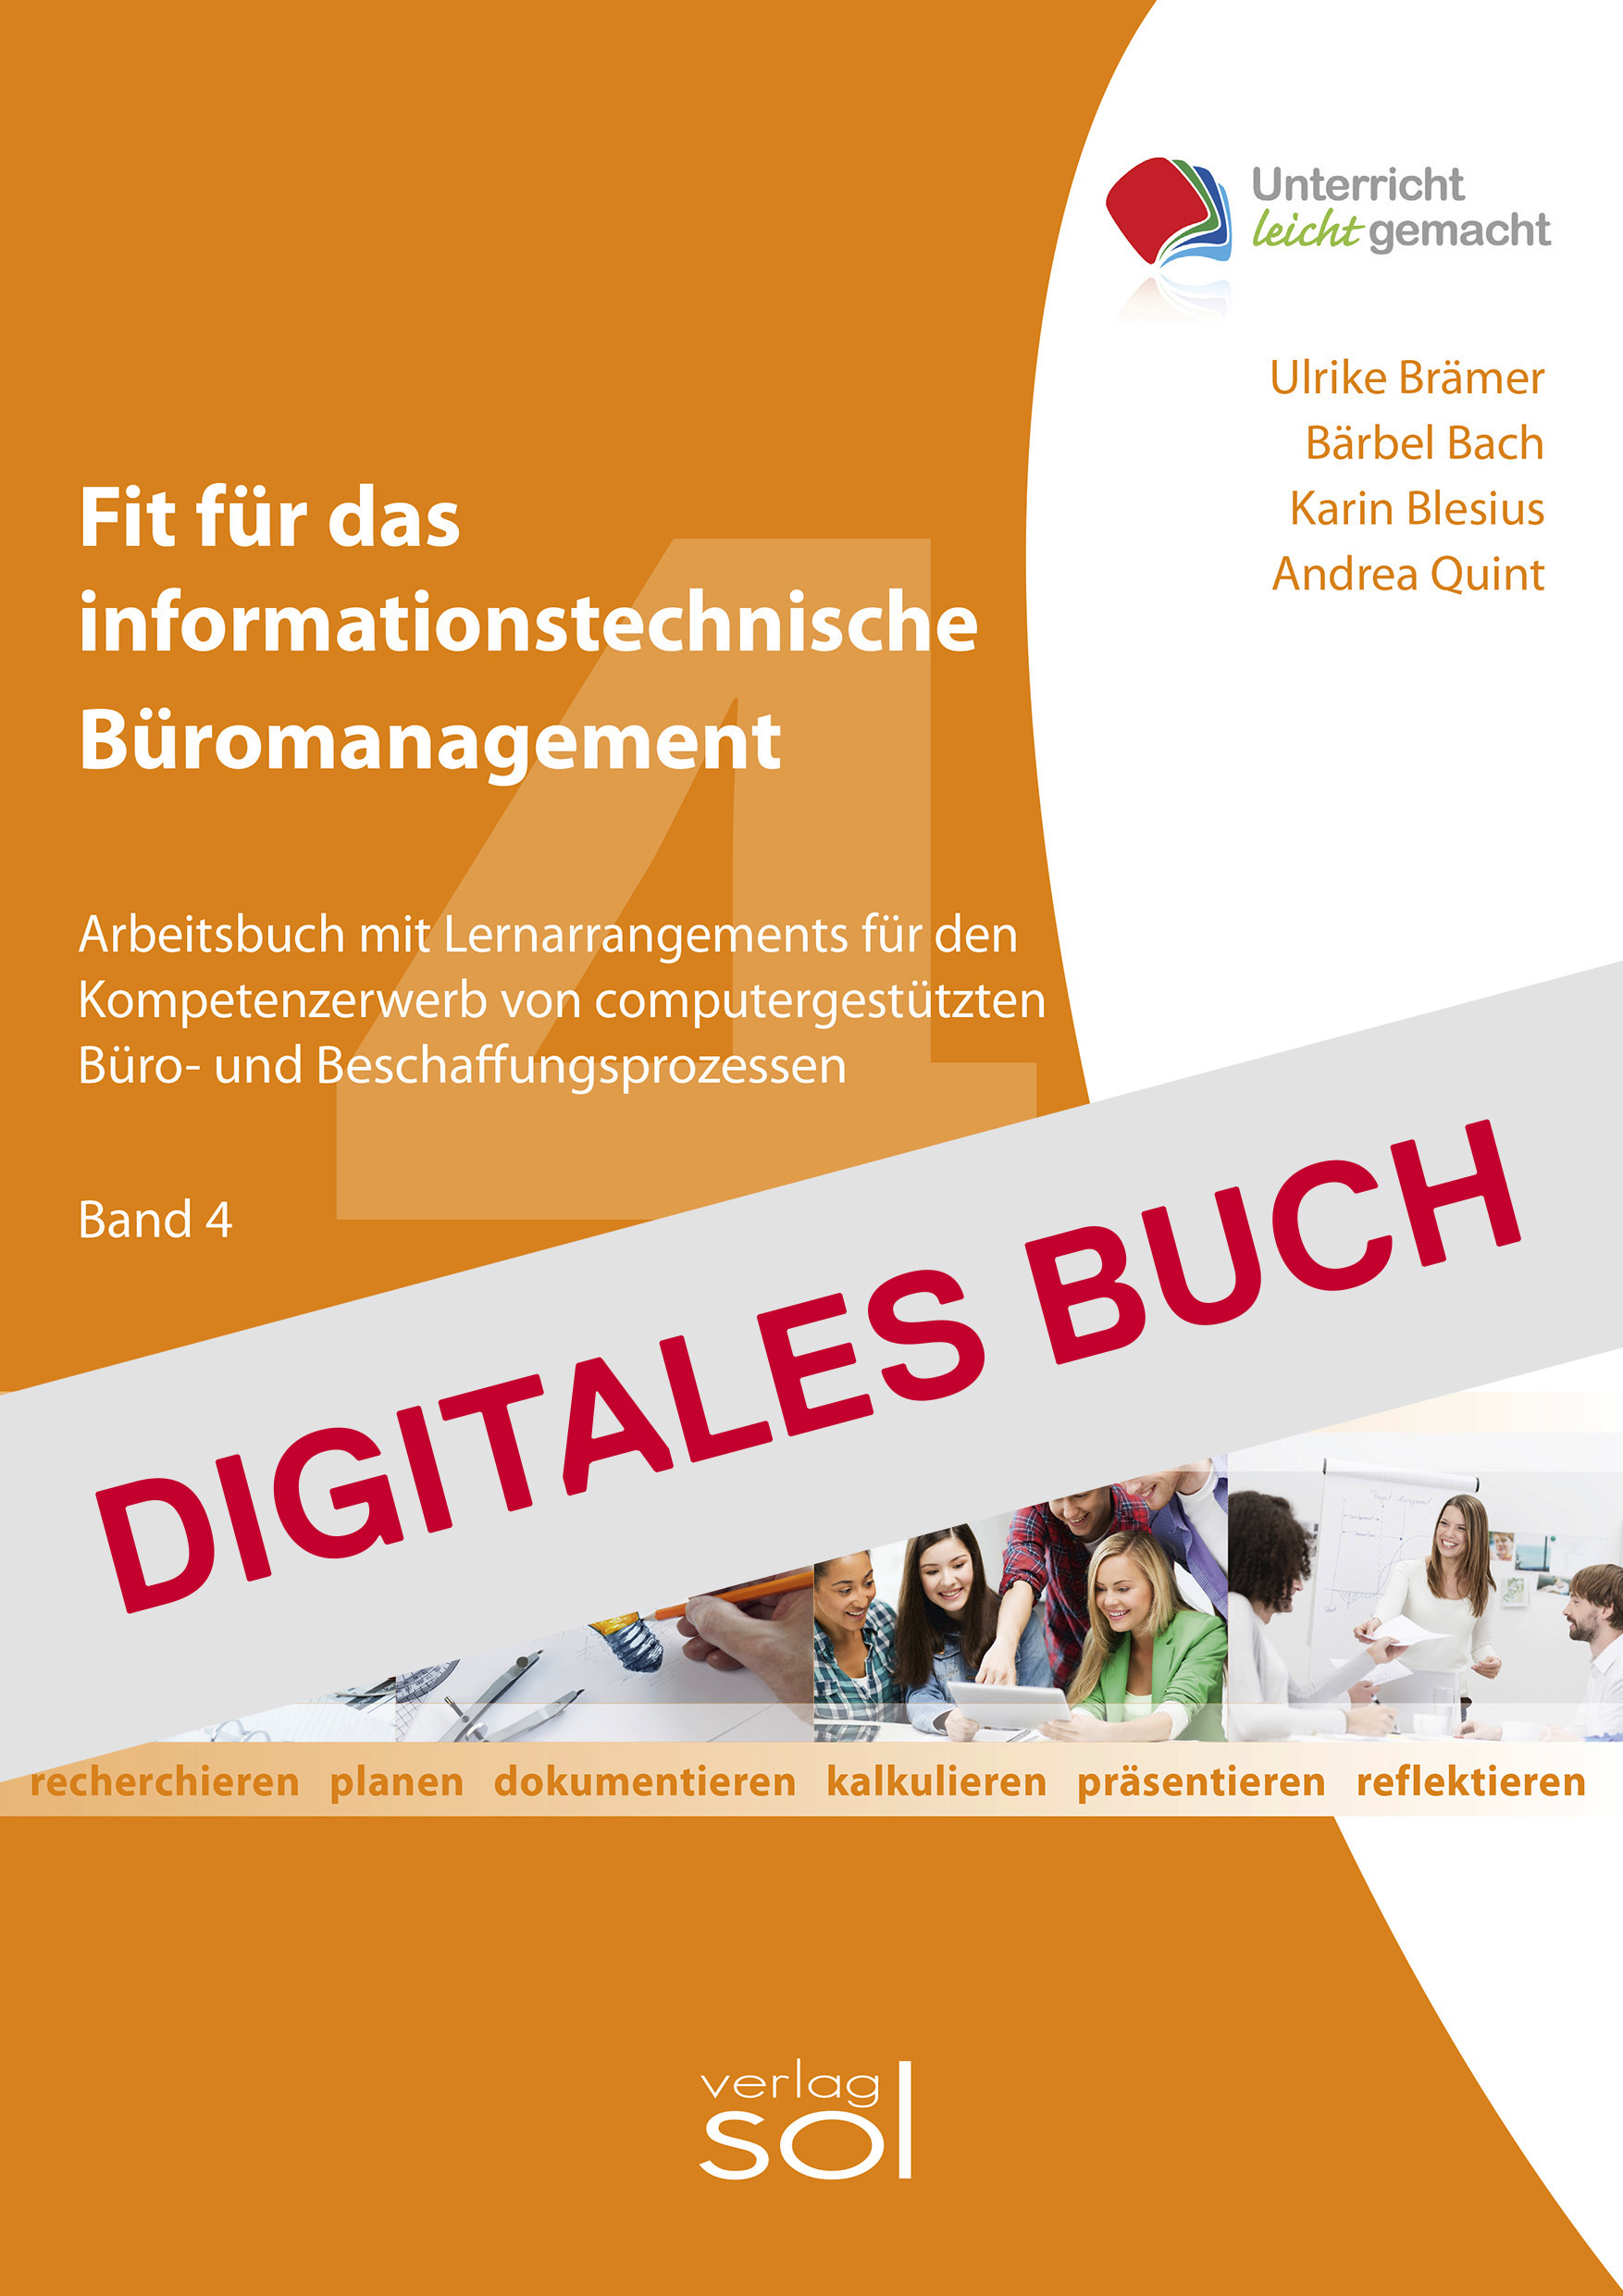 Fit für das informationstechnische Büromanagement (Band 4) - Digitales Buch